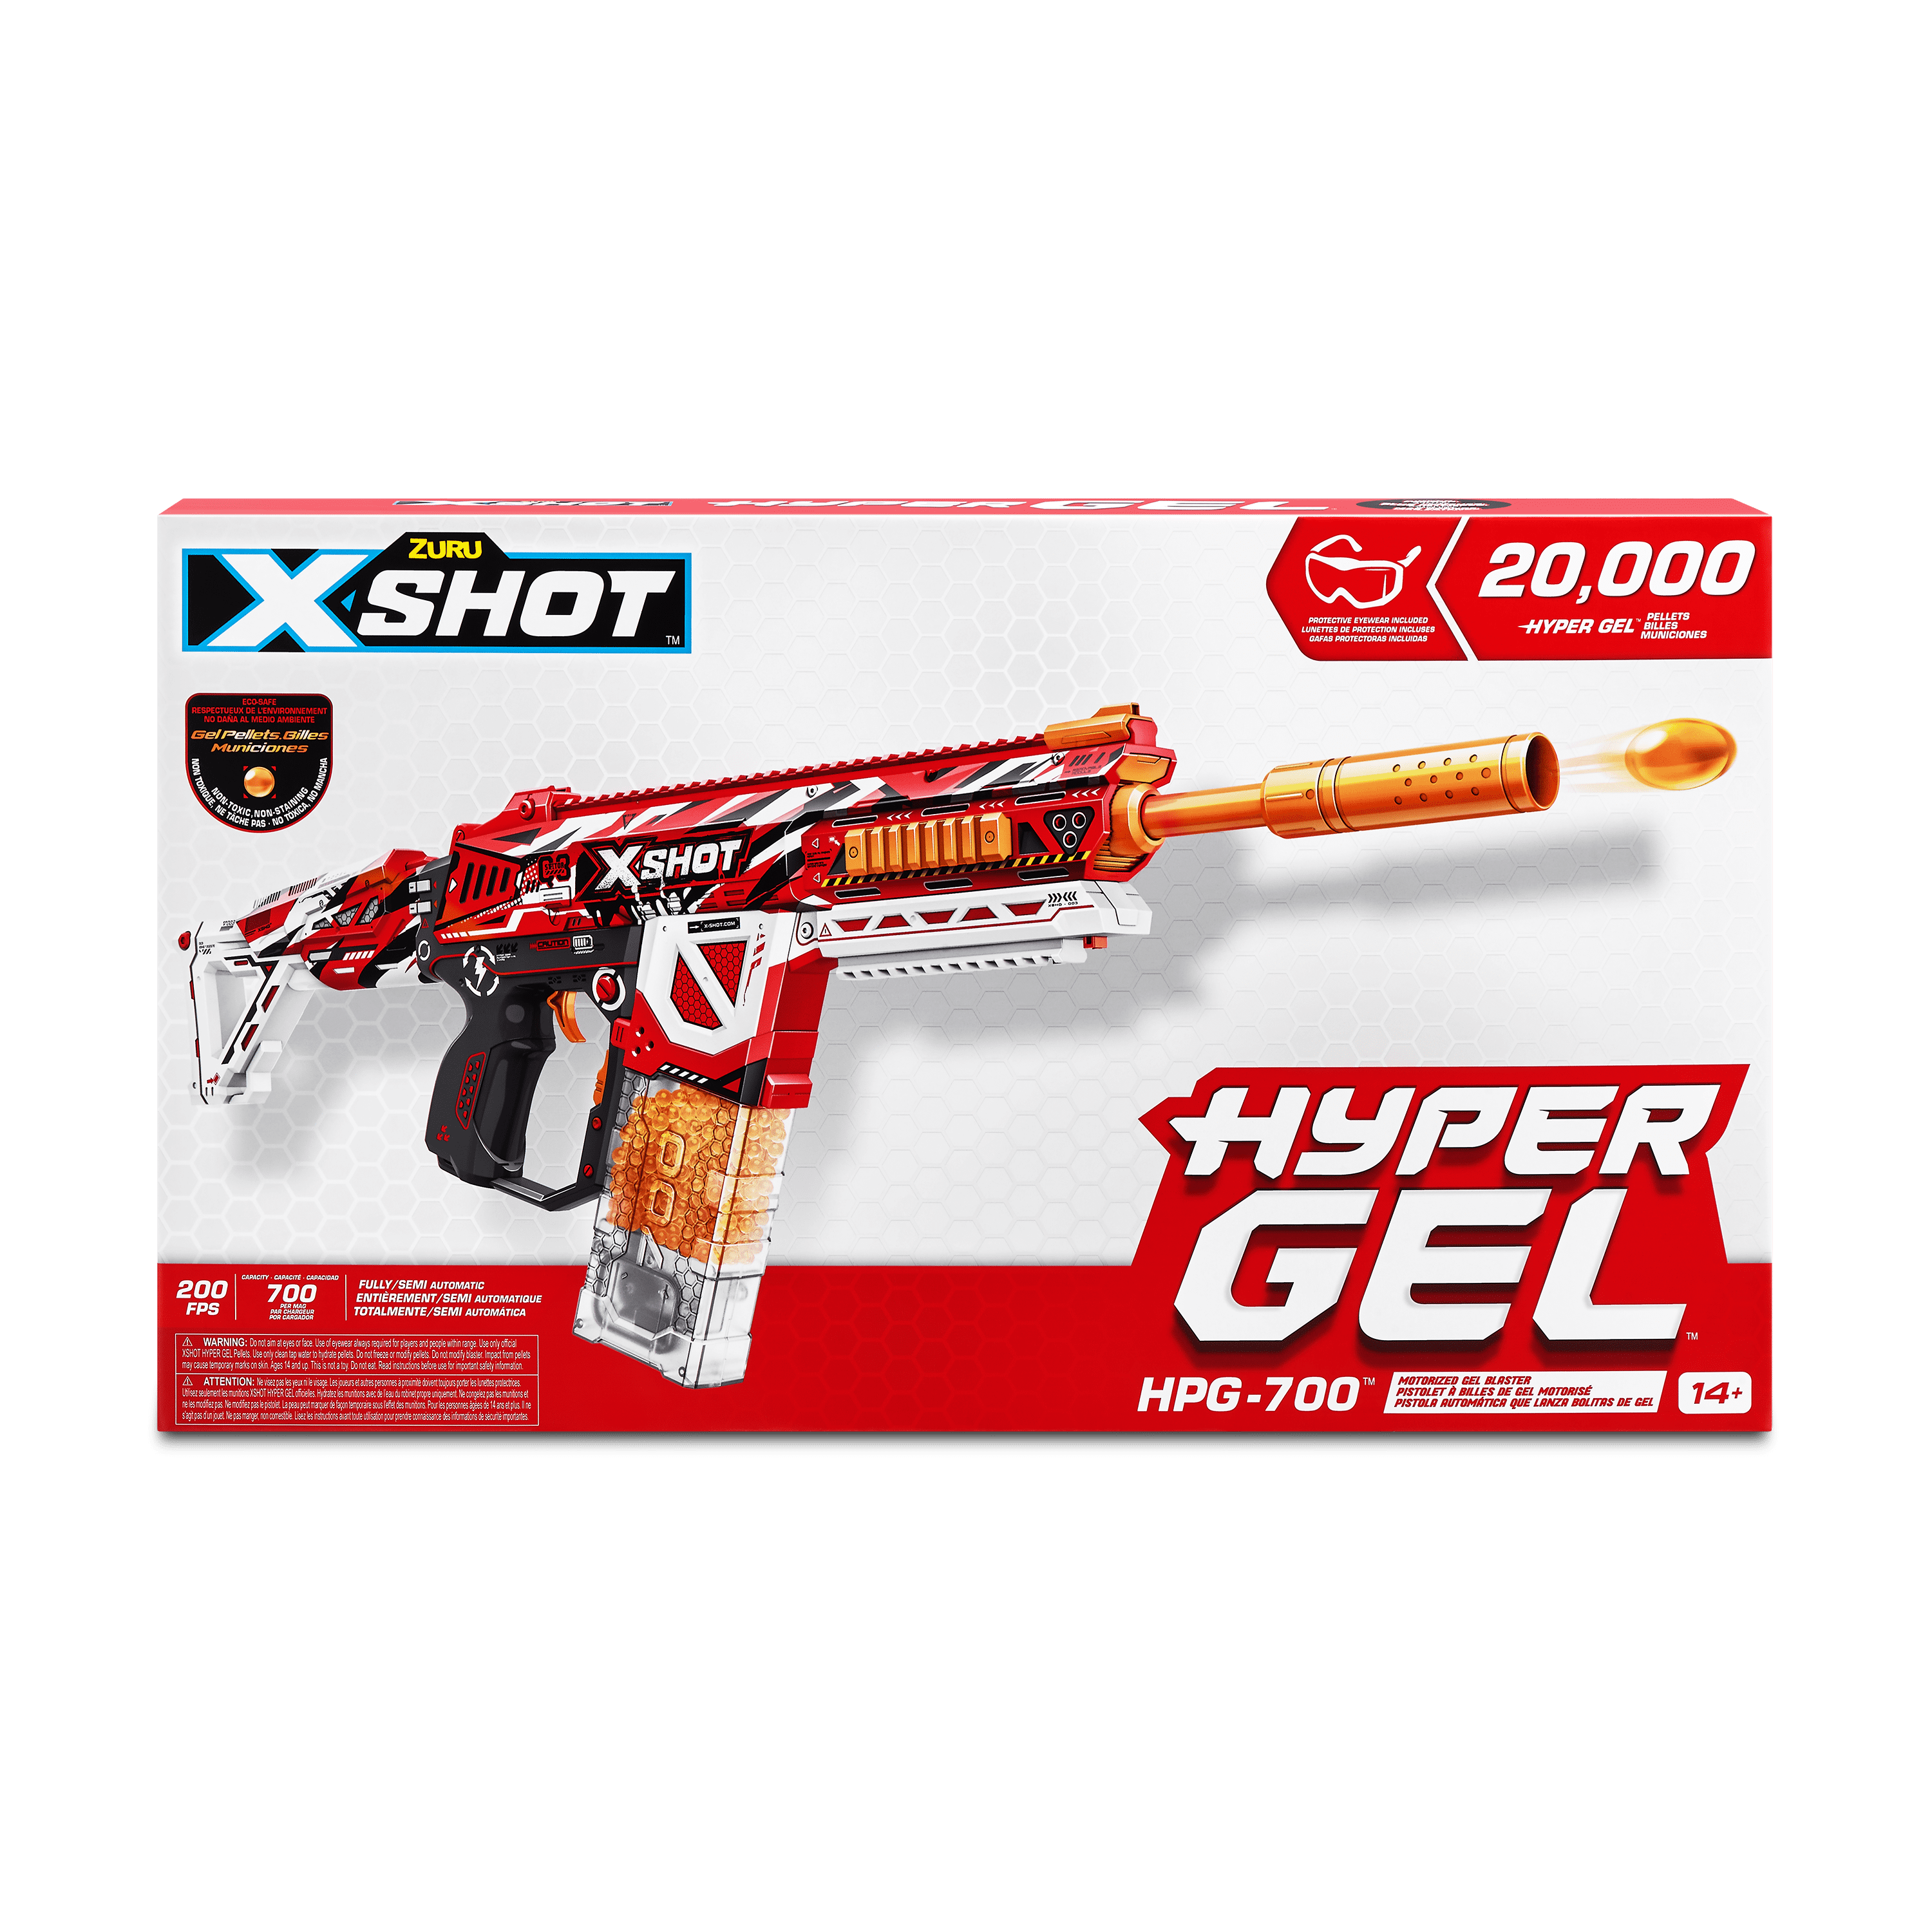 X-Shot Hyper Gel HPG-700 Blaster (20,000 Hyper Gel Pellets) by